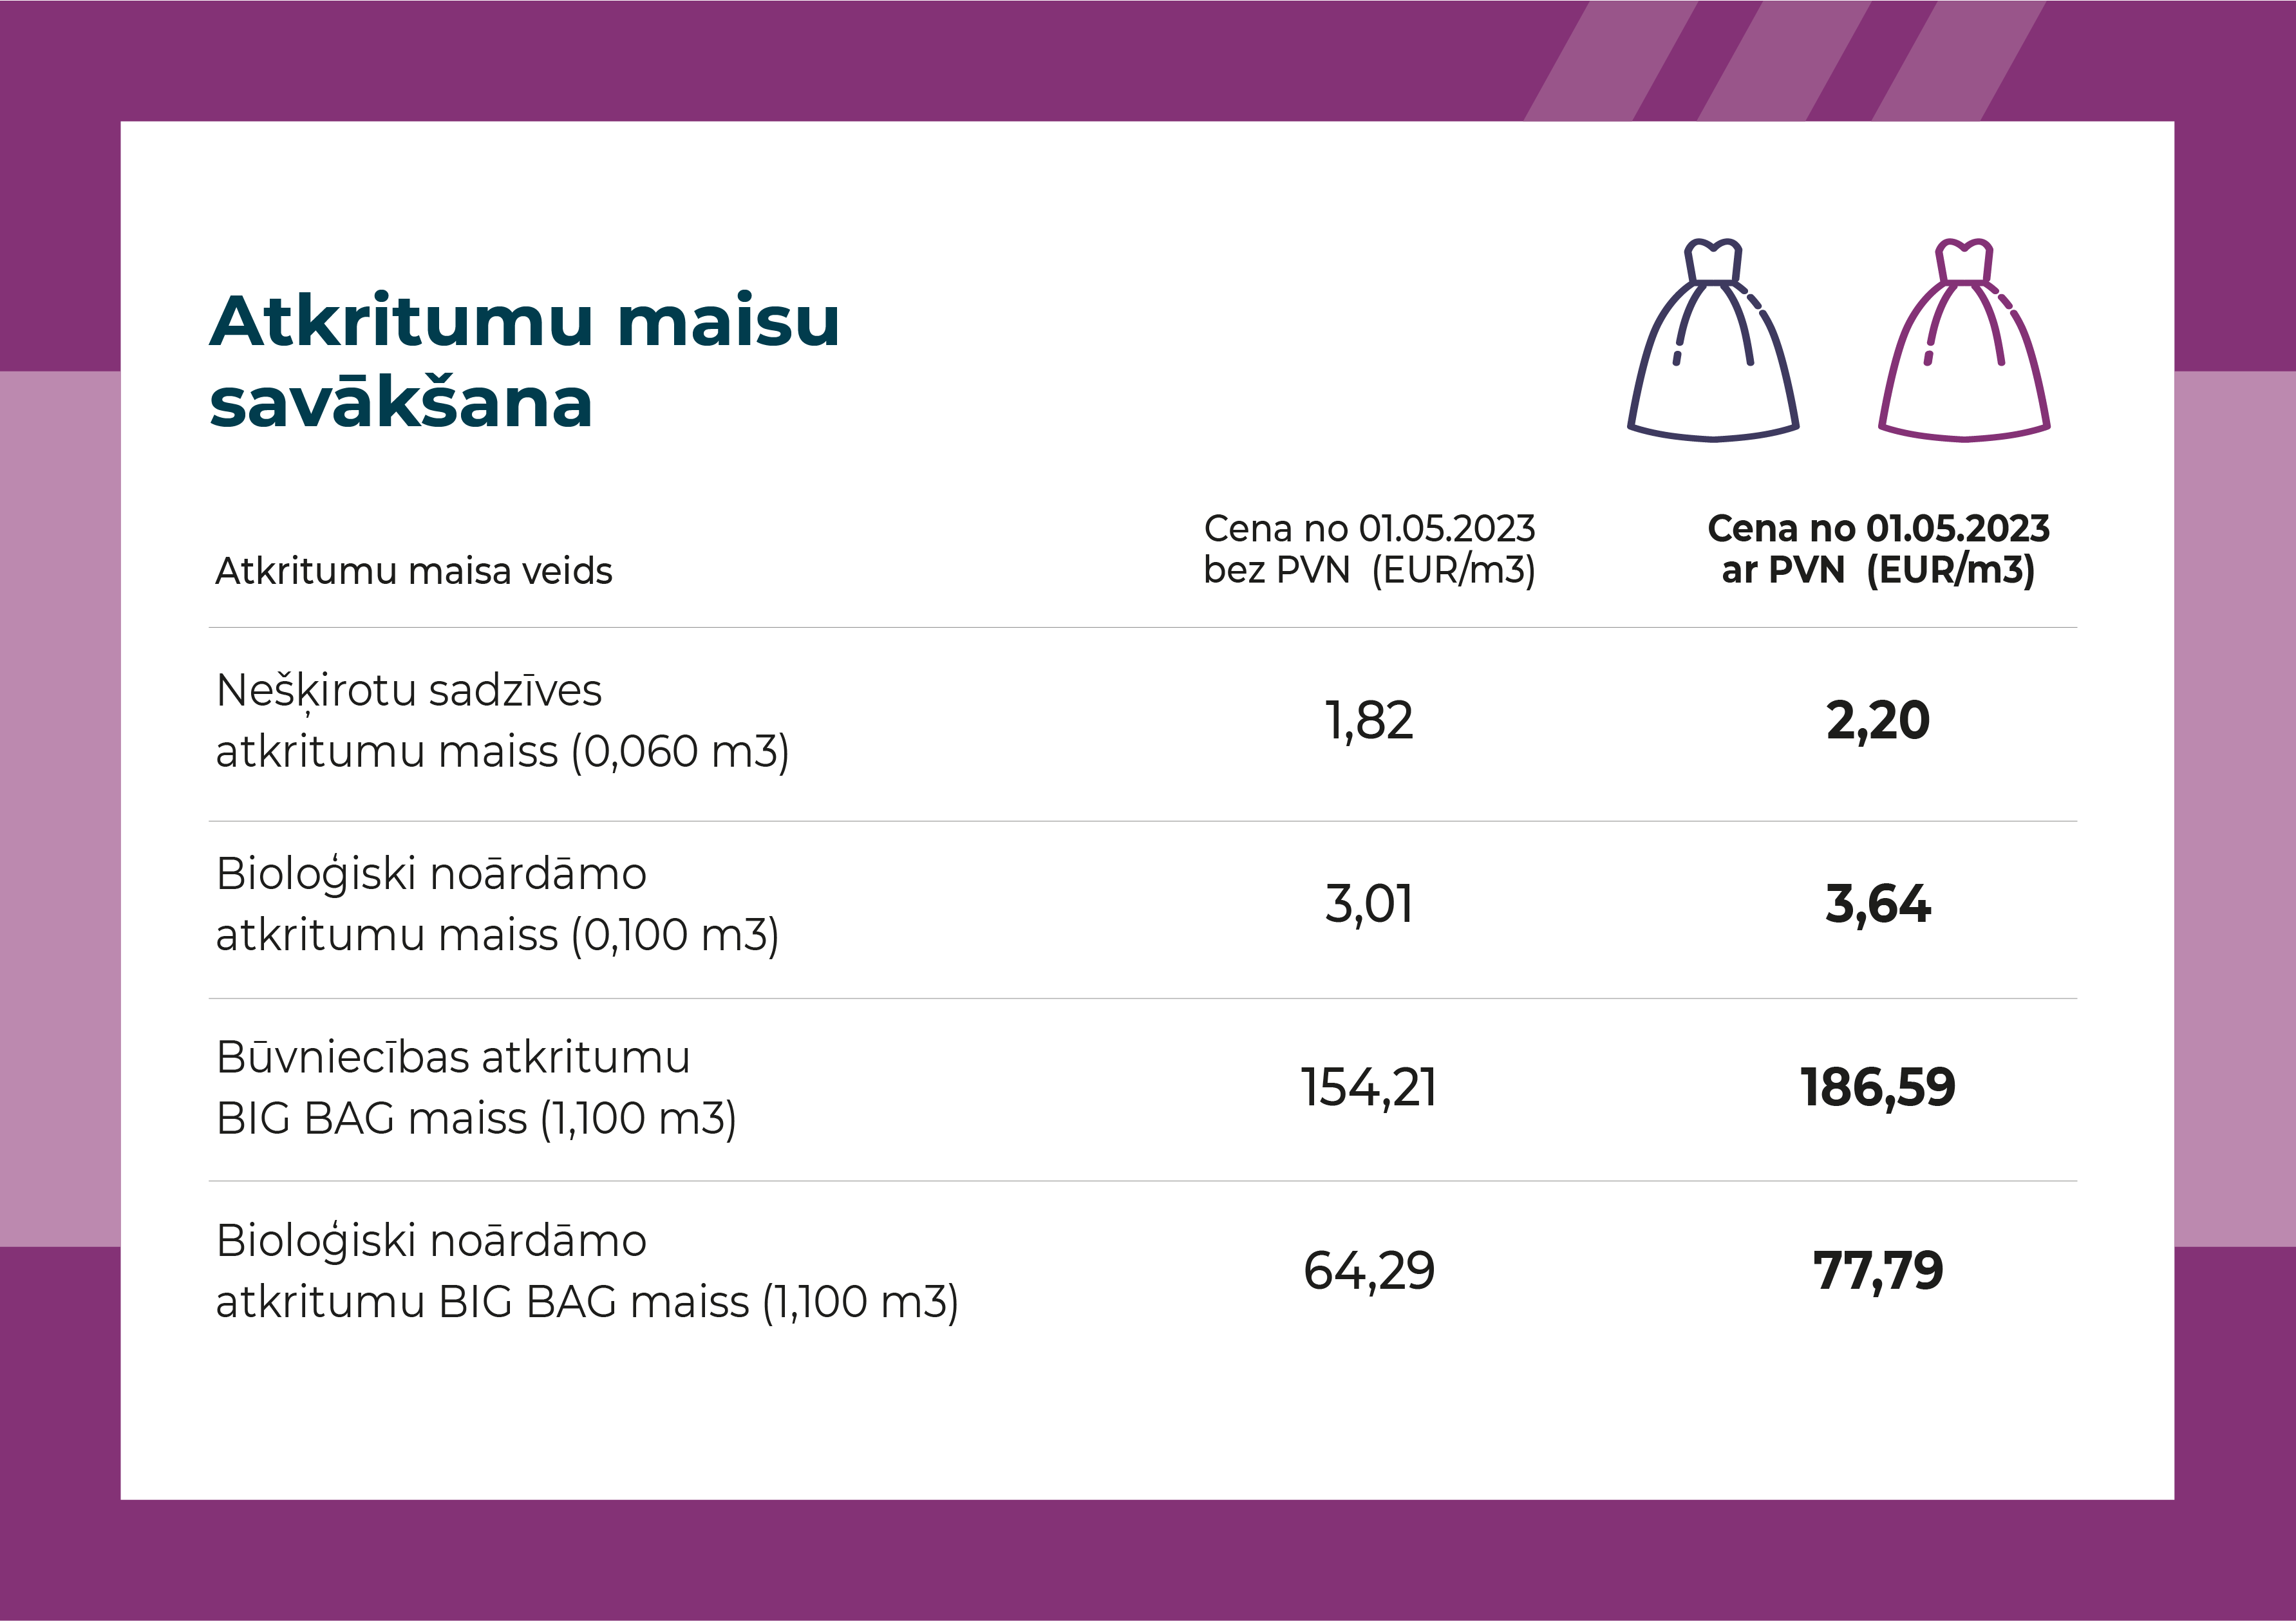 Nešķirotu sadzīves atkritumu maiss (0,060 m3) 2.20 eur Bioloģiski noārdāmo atkritumu maiss (0,100 m3) 3.64 eur Būvniecības atkritumu BIG BAG maiss (1,100 m3) 186.59 eur Bioloģiski noārdāmo atkritumu BIG BAG maiss (1,100 m3) 77.79 eur